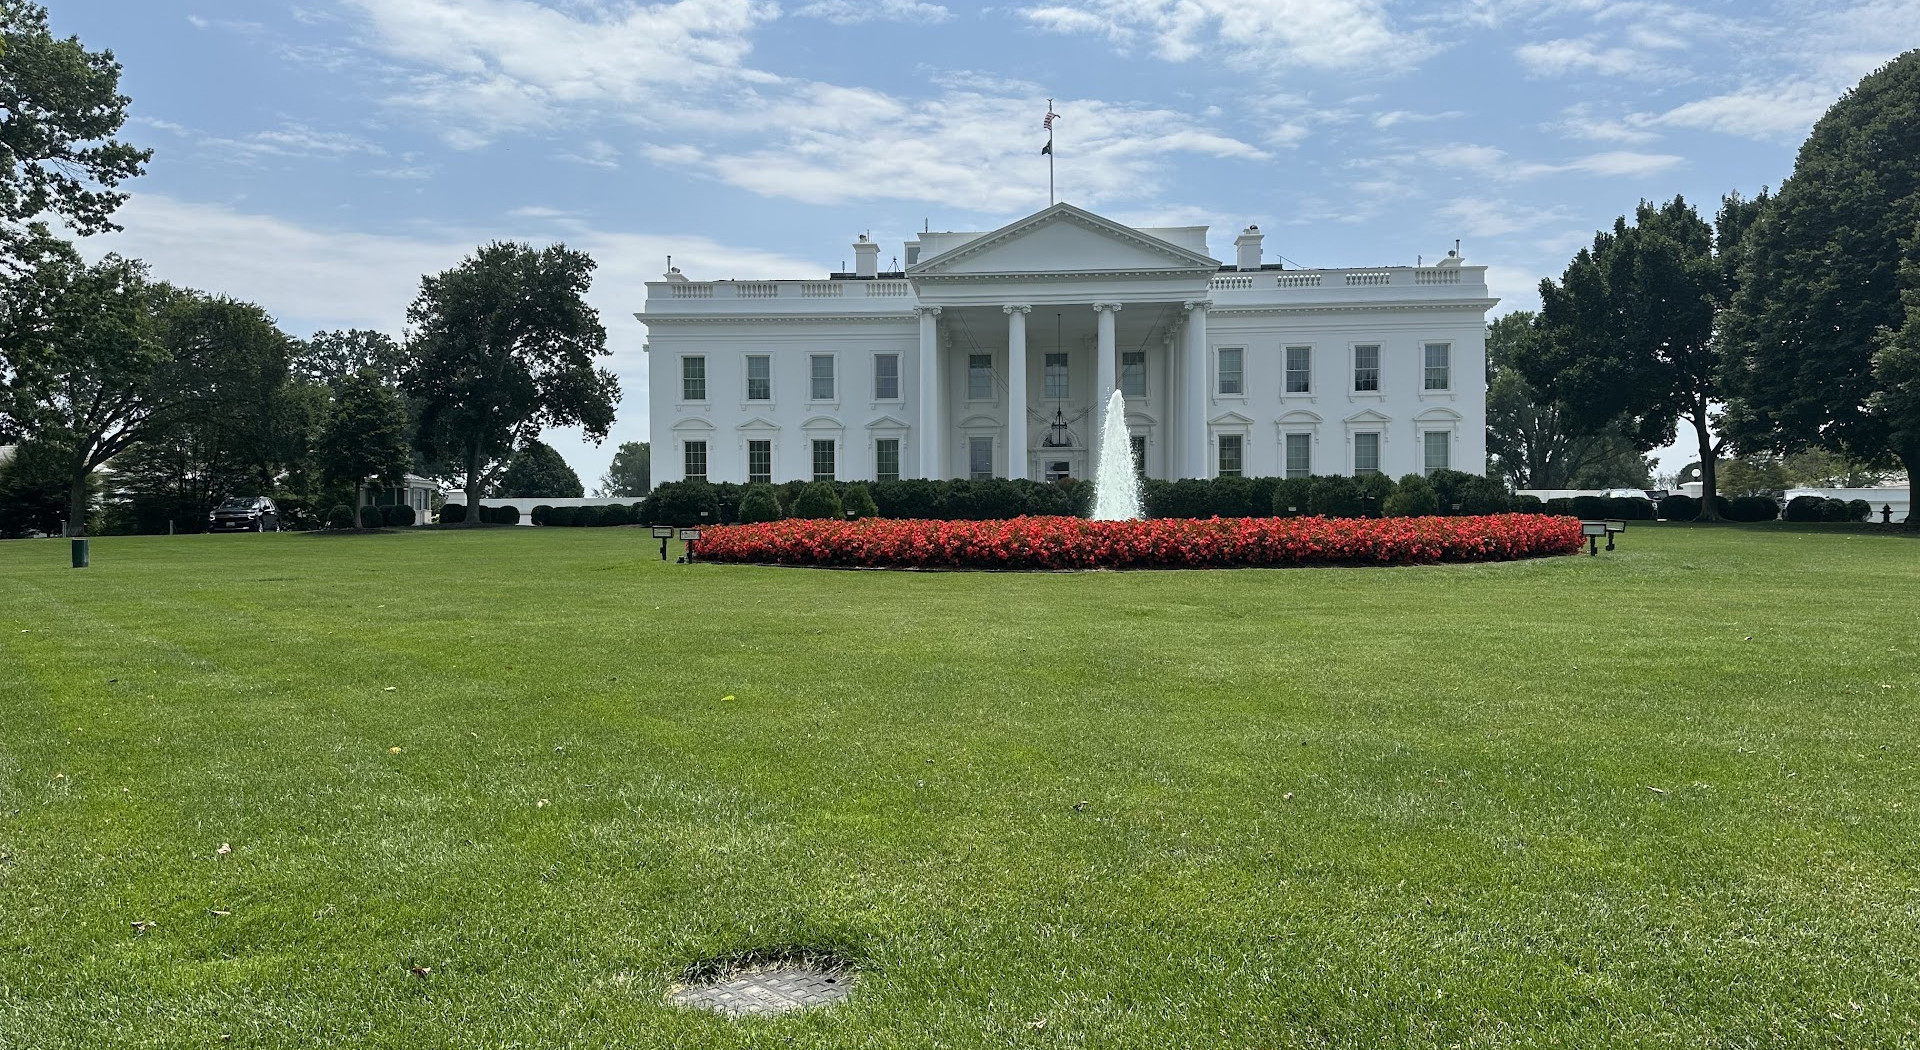 Centro visitatori della Casa Bianca